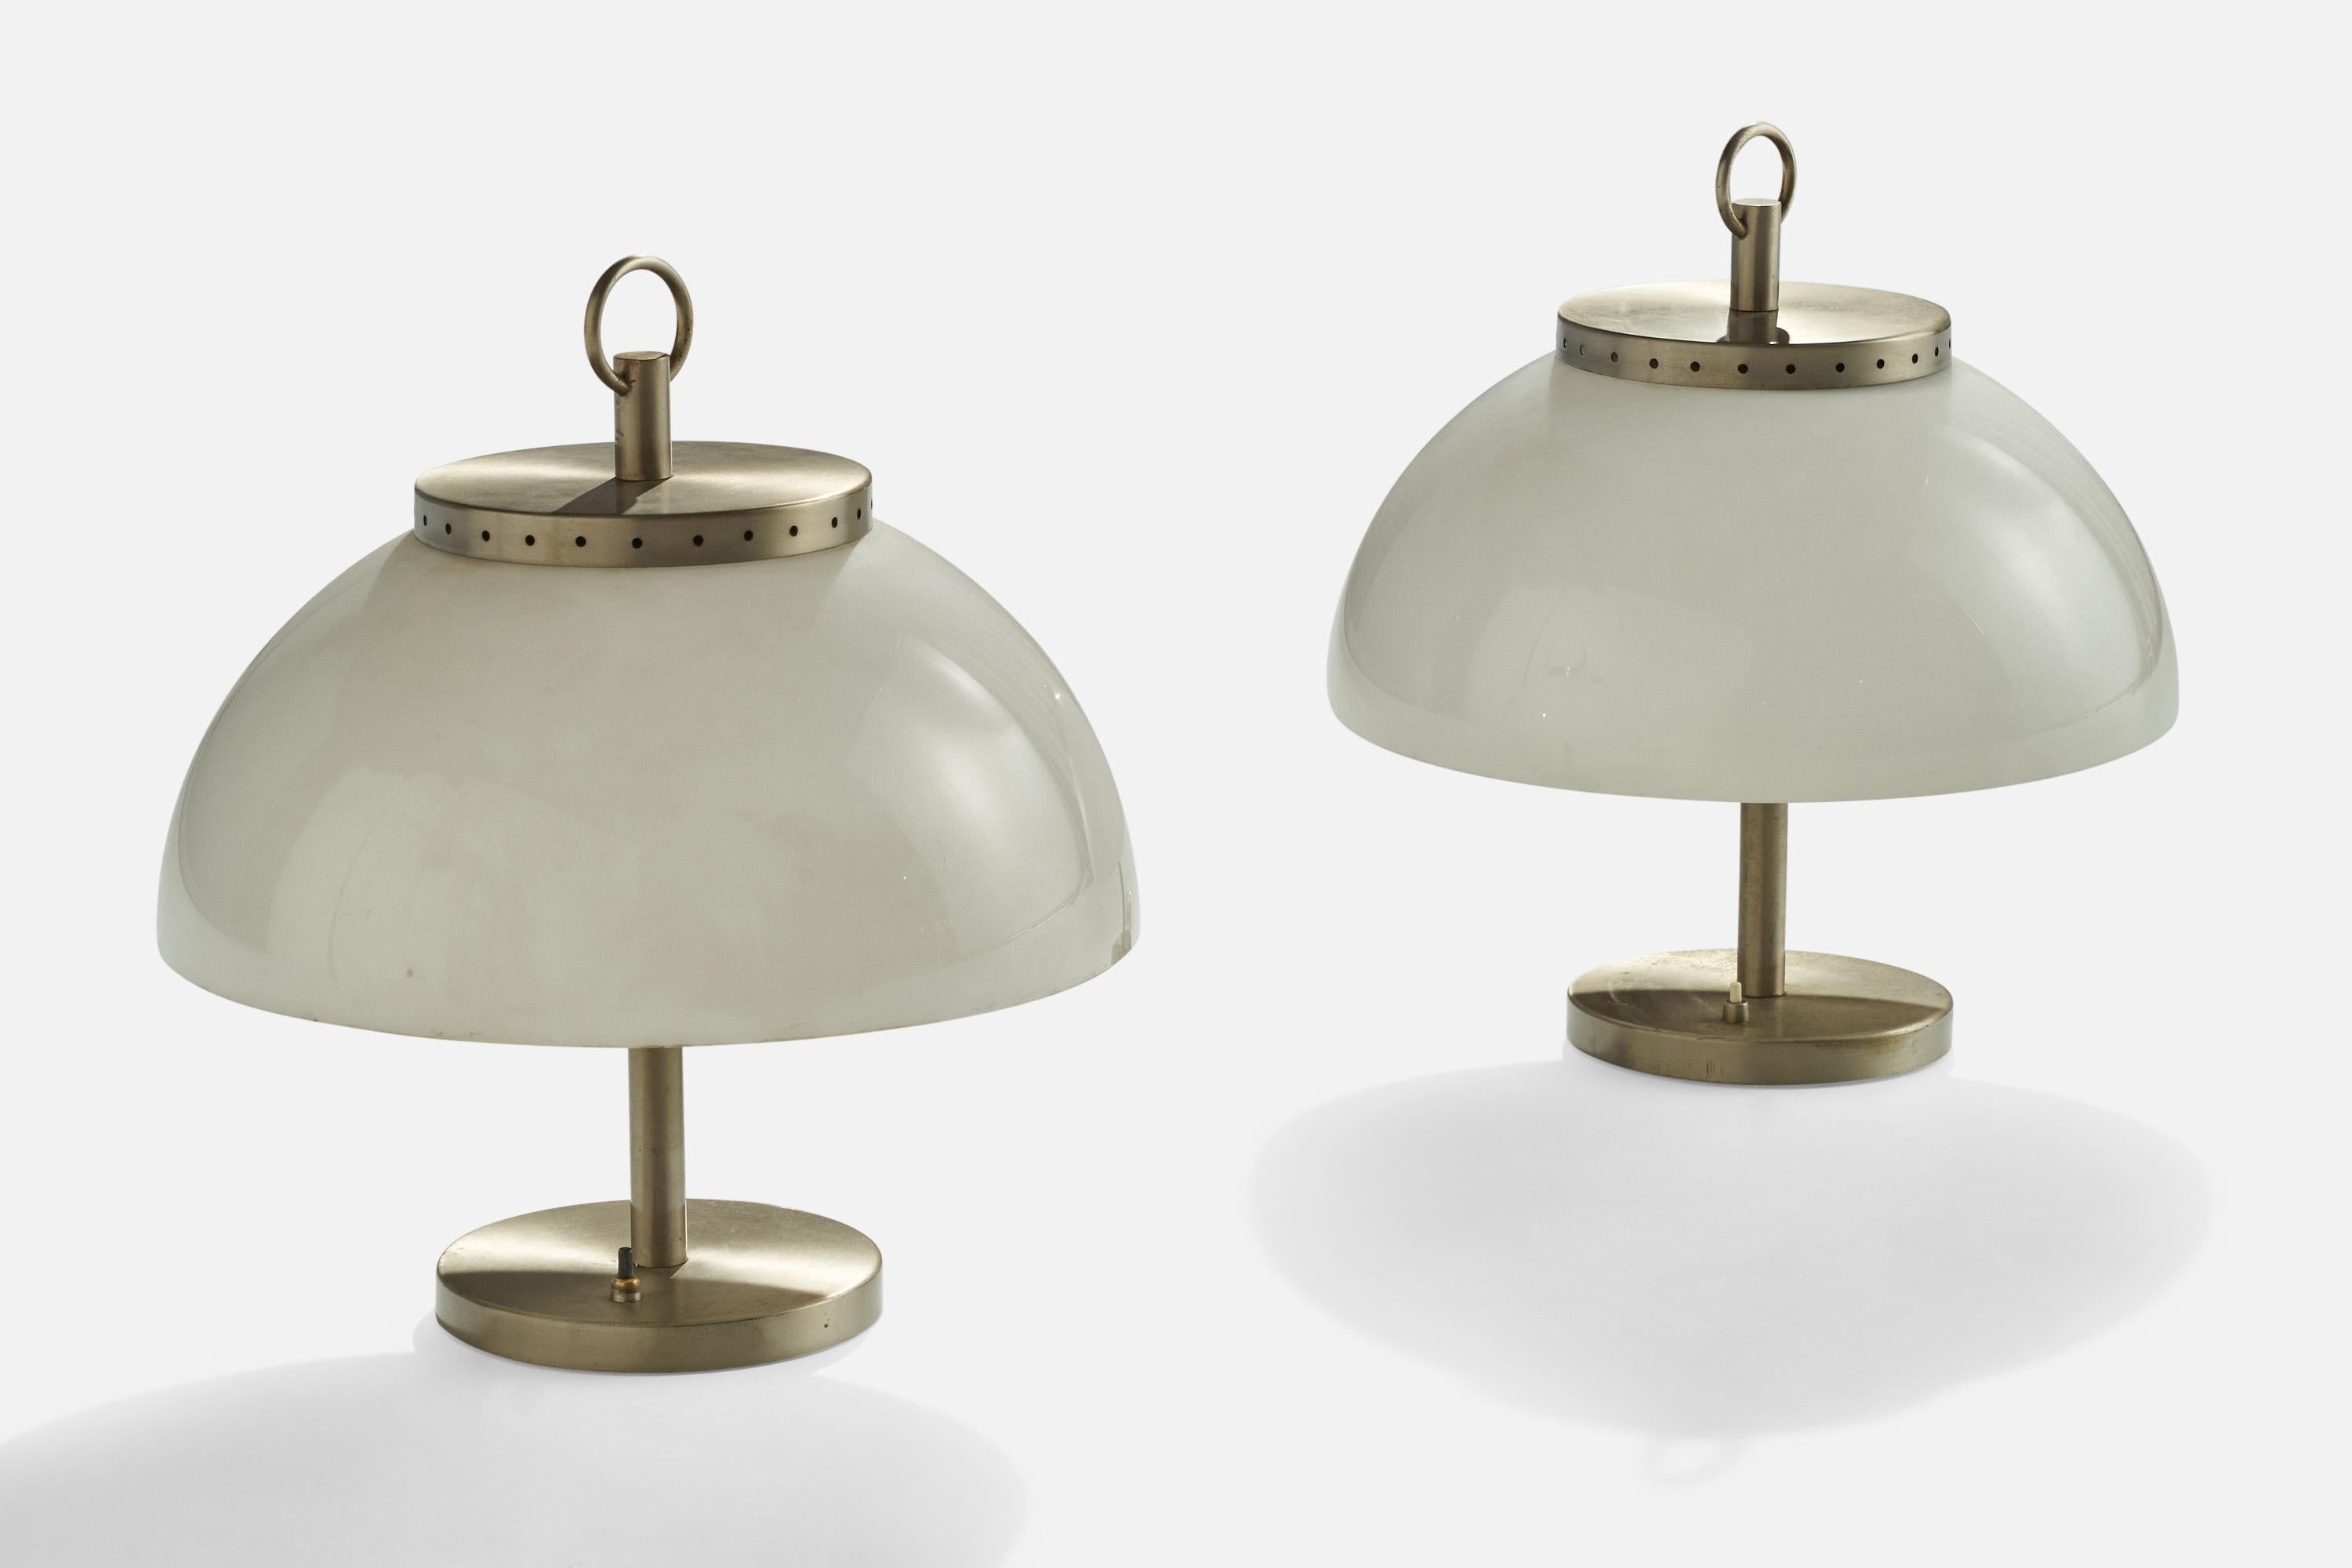 Paire de lampes de table en métal et en acrylique conçues et produites en Italie, C.1960.

Dimensions globales (pouces) : 17